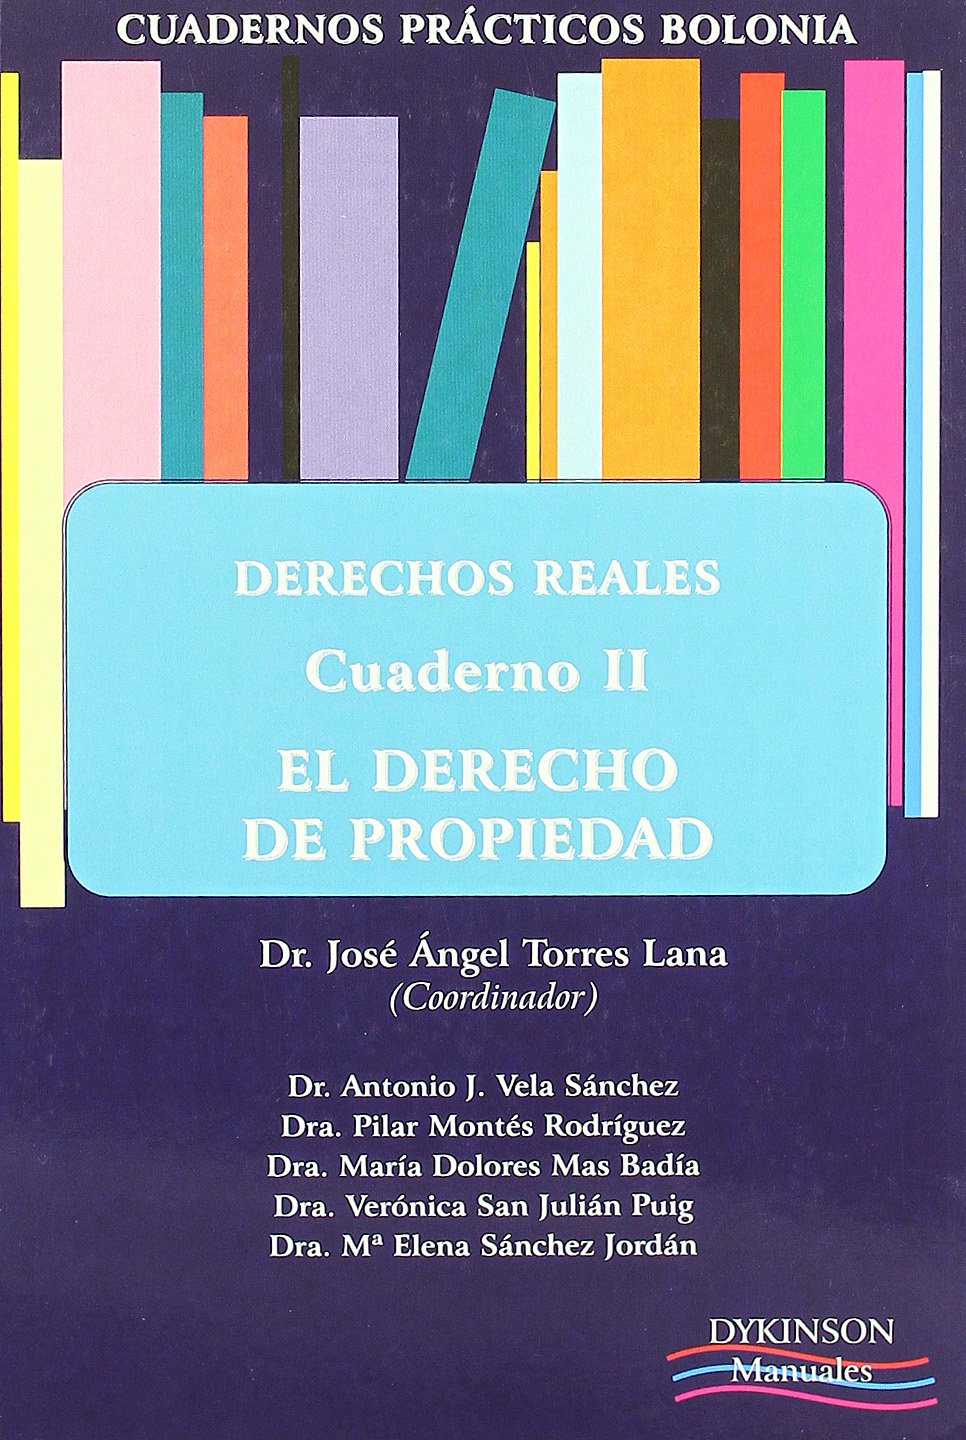 DERECHOS REALES CUADERNO II EL DERECHO DE PROPIEDAD